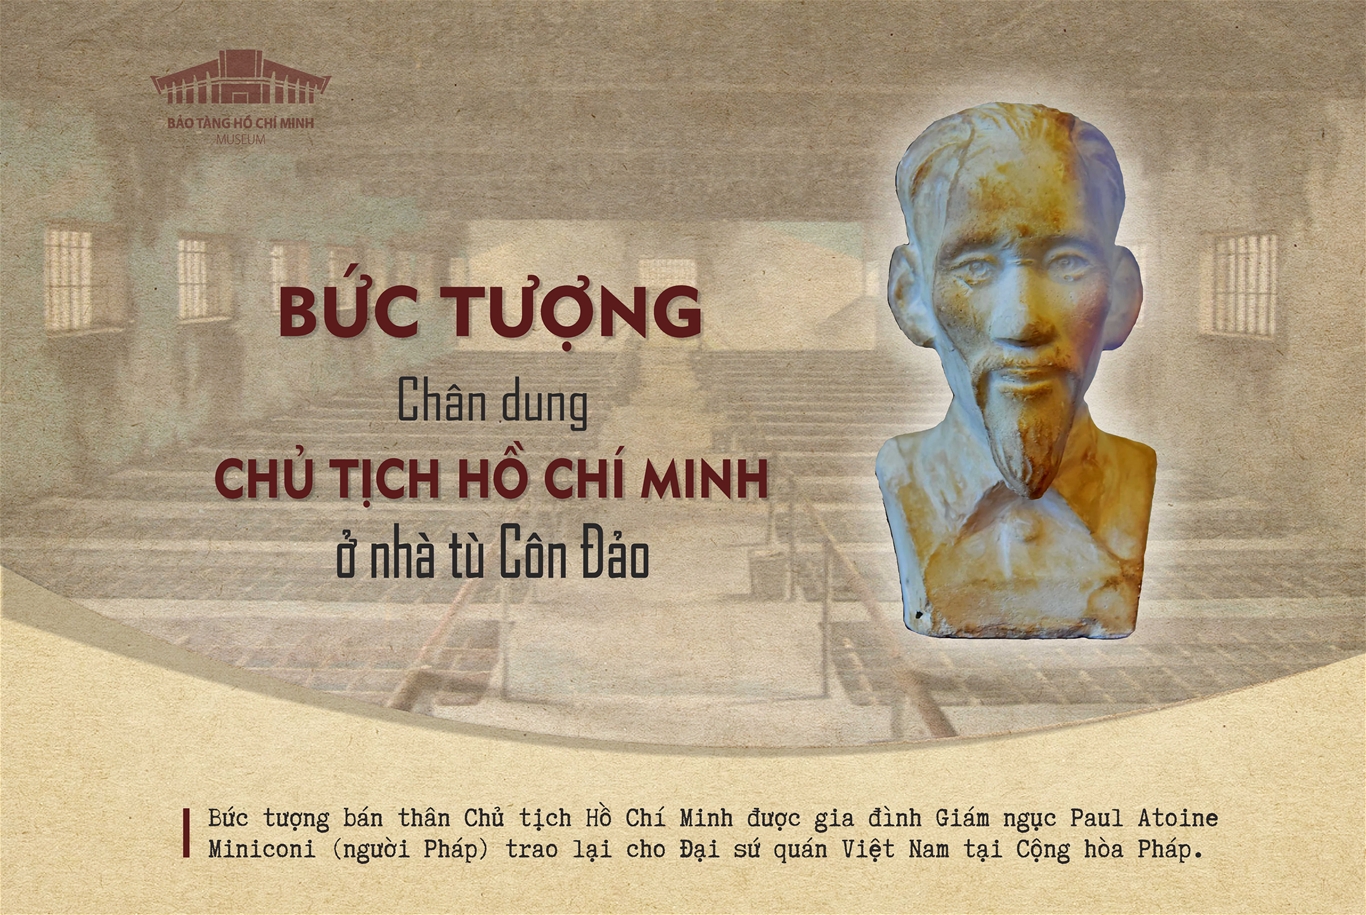 Bức tượng chân dung Chủ tịch Hồ Chí Minh ở Nhà tù Côn Đảo